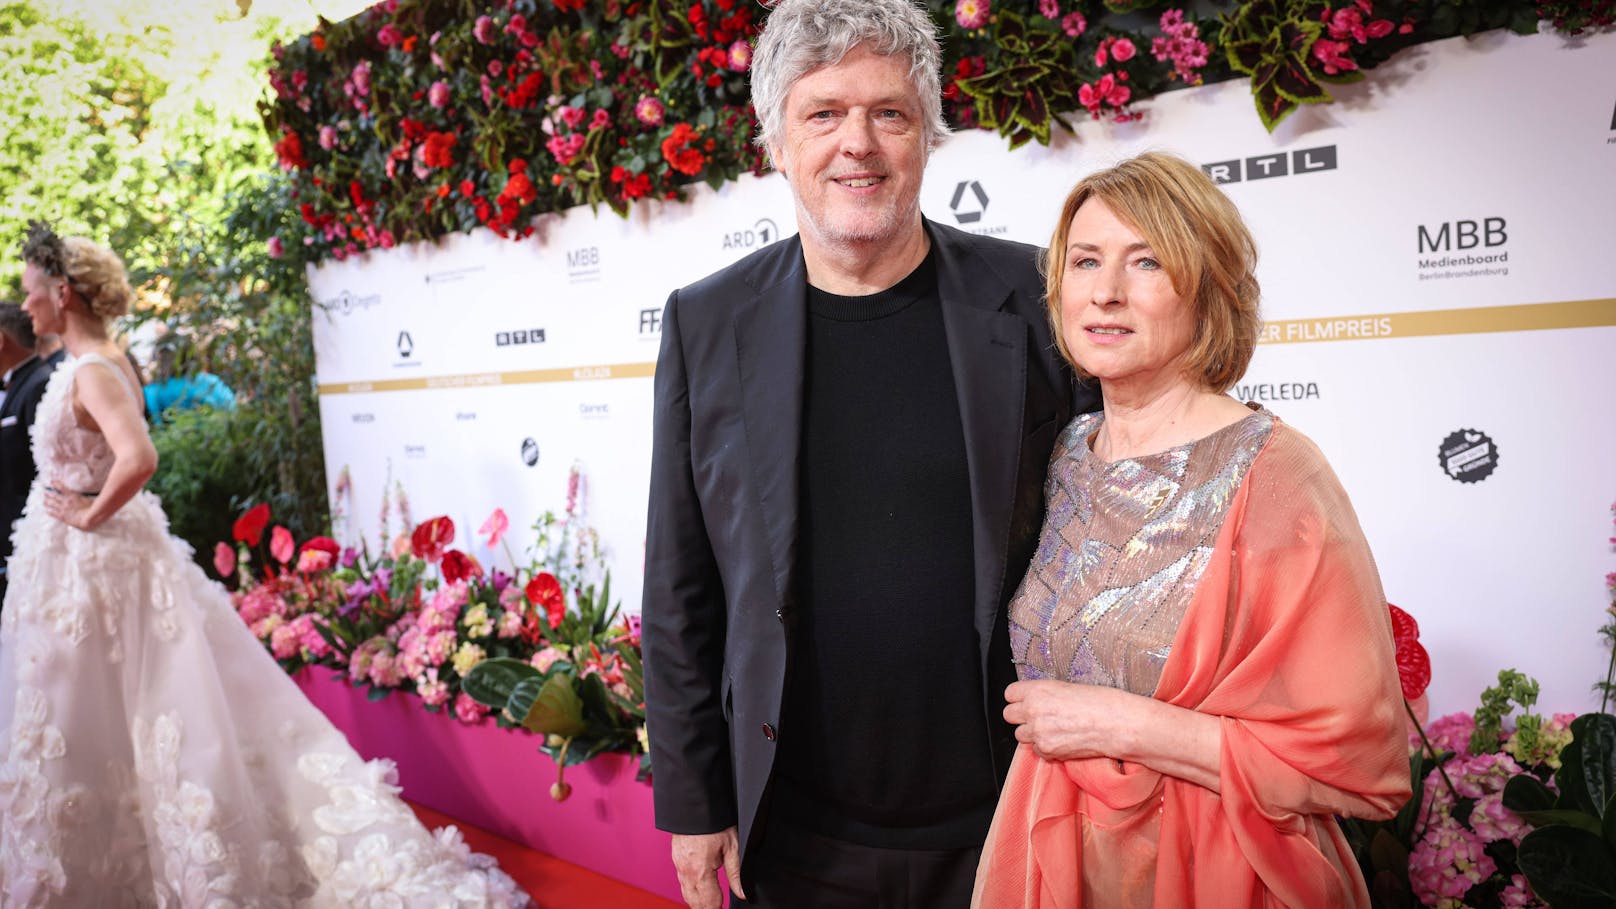 Matthias Glasner und Corinna Harfouch auf dem Roten Teppich bei der Verleihung der "Lola"-Awards in Berlin.